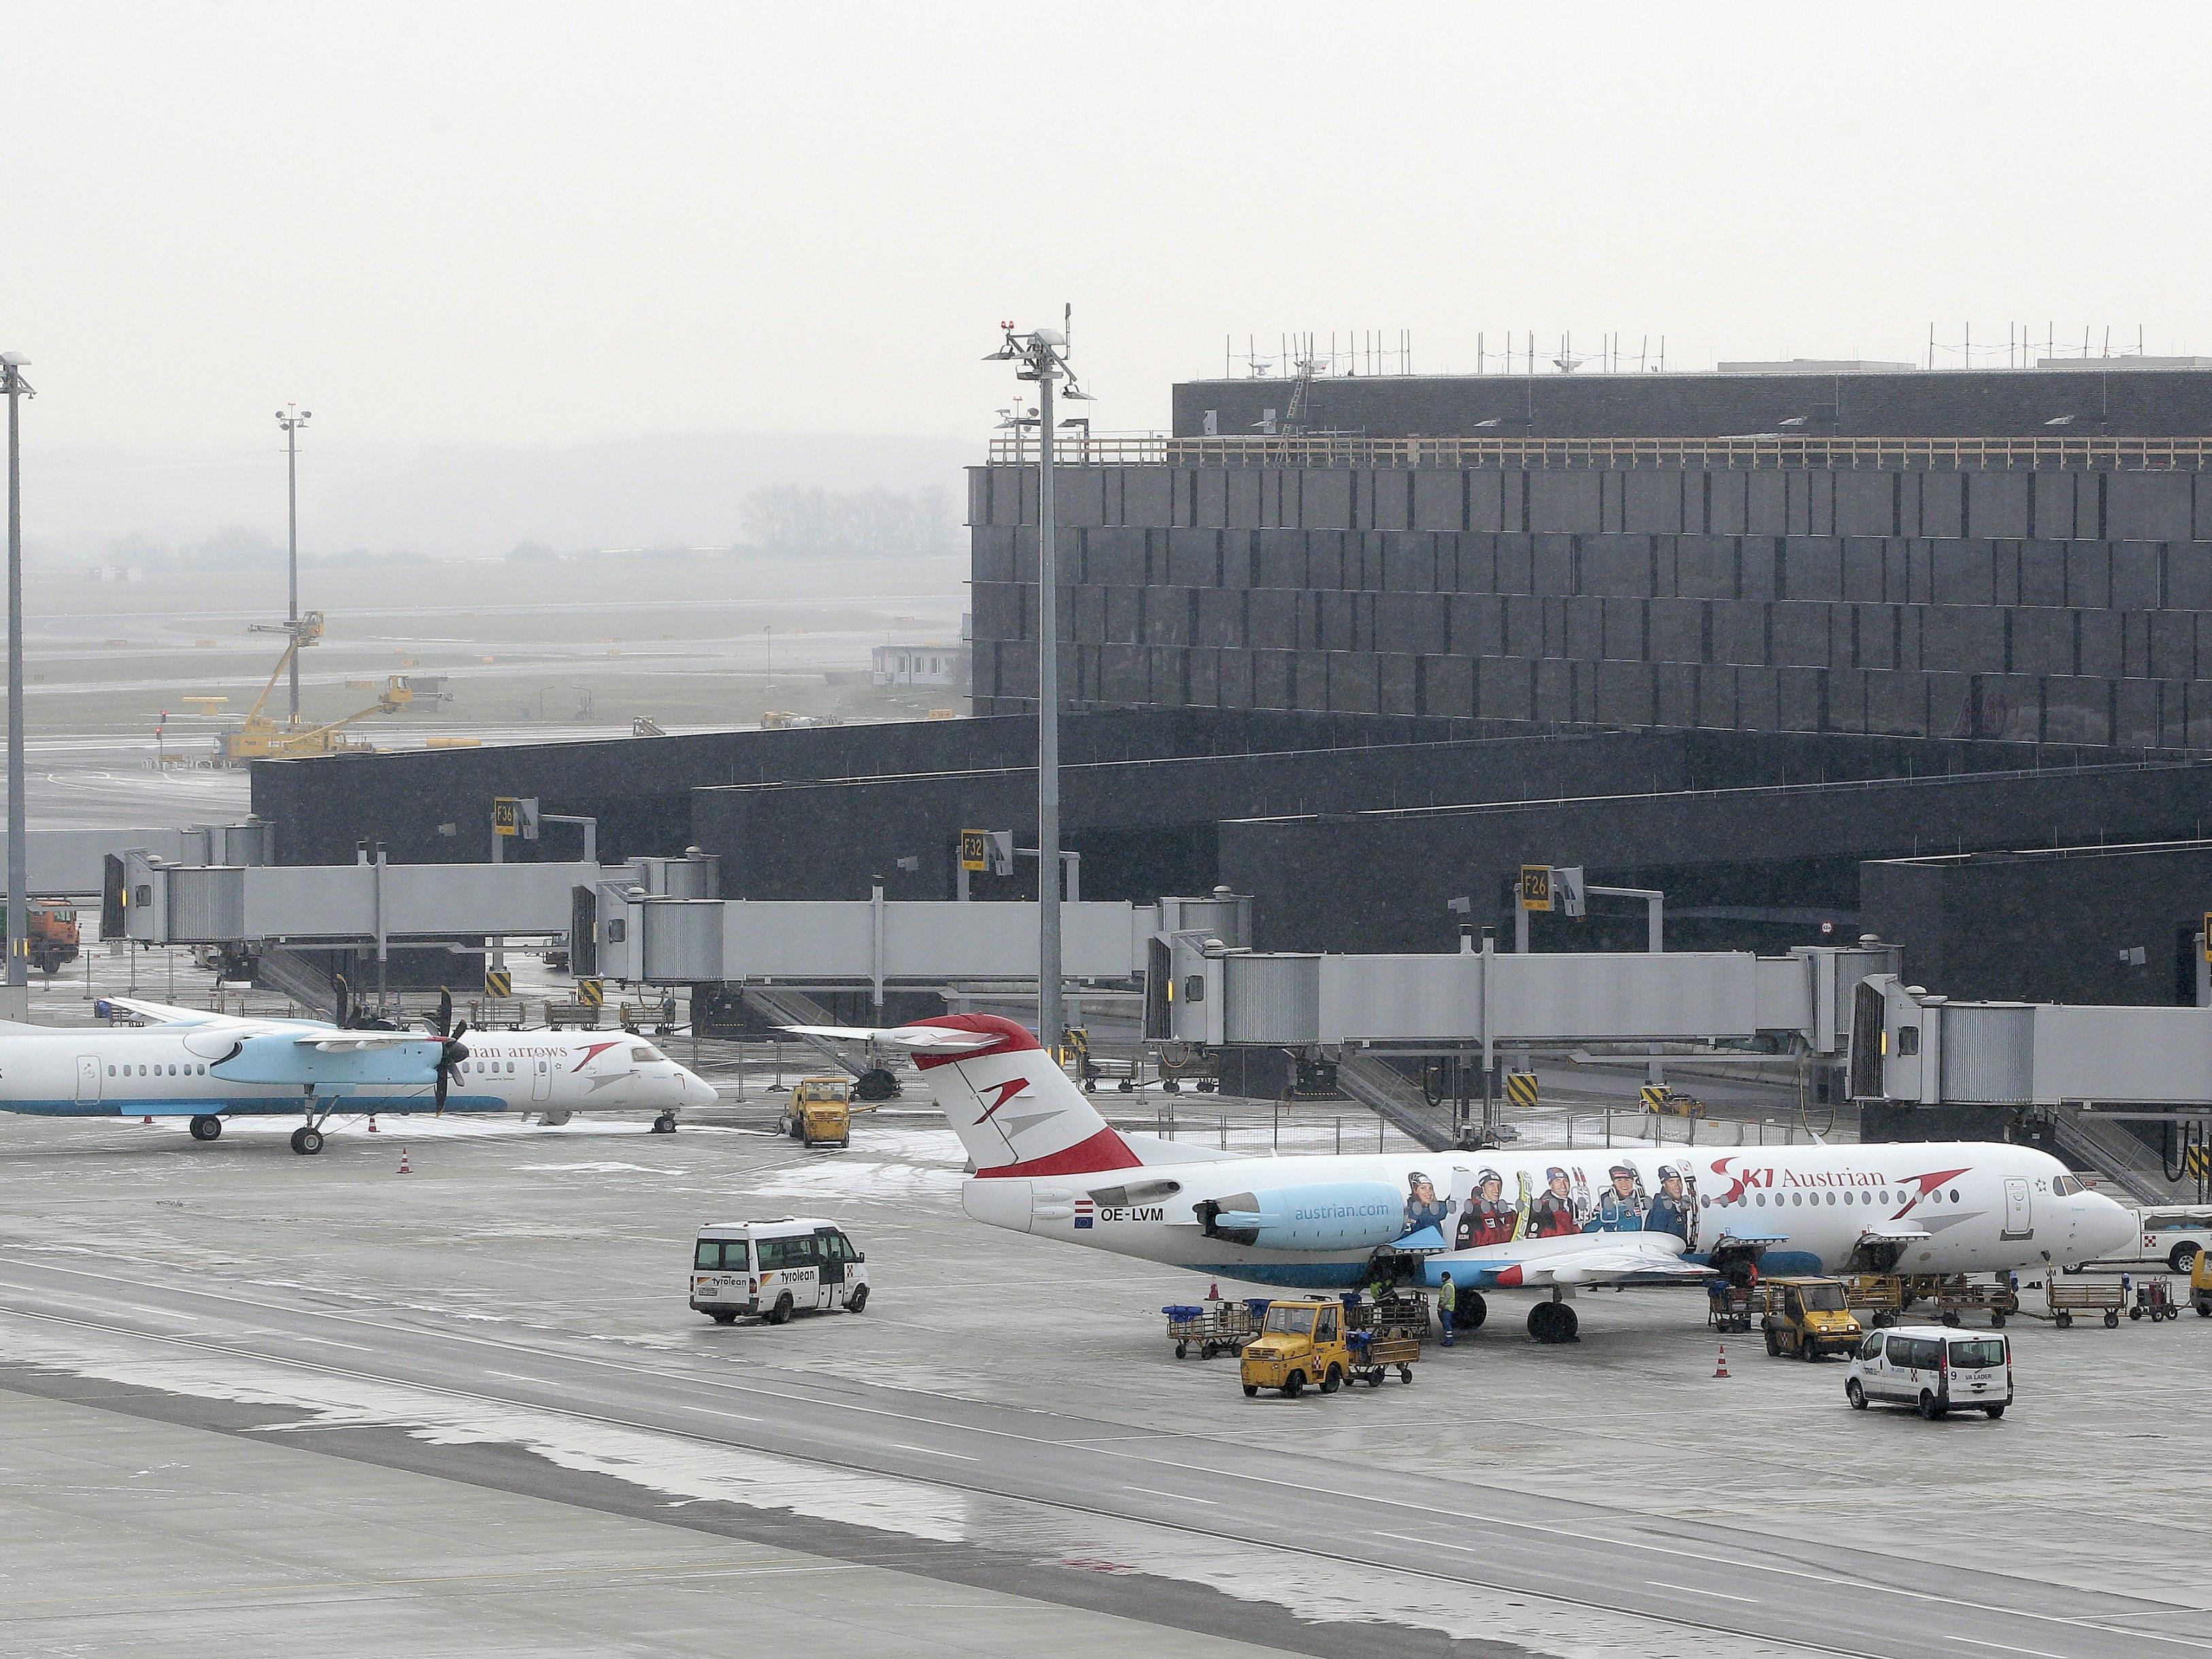 Der Flughafen Wien investiert in ein neues Bürokomplex für Brexit-Flüchtlinge.